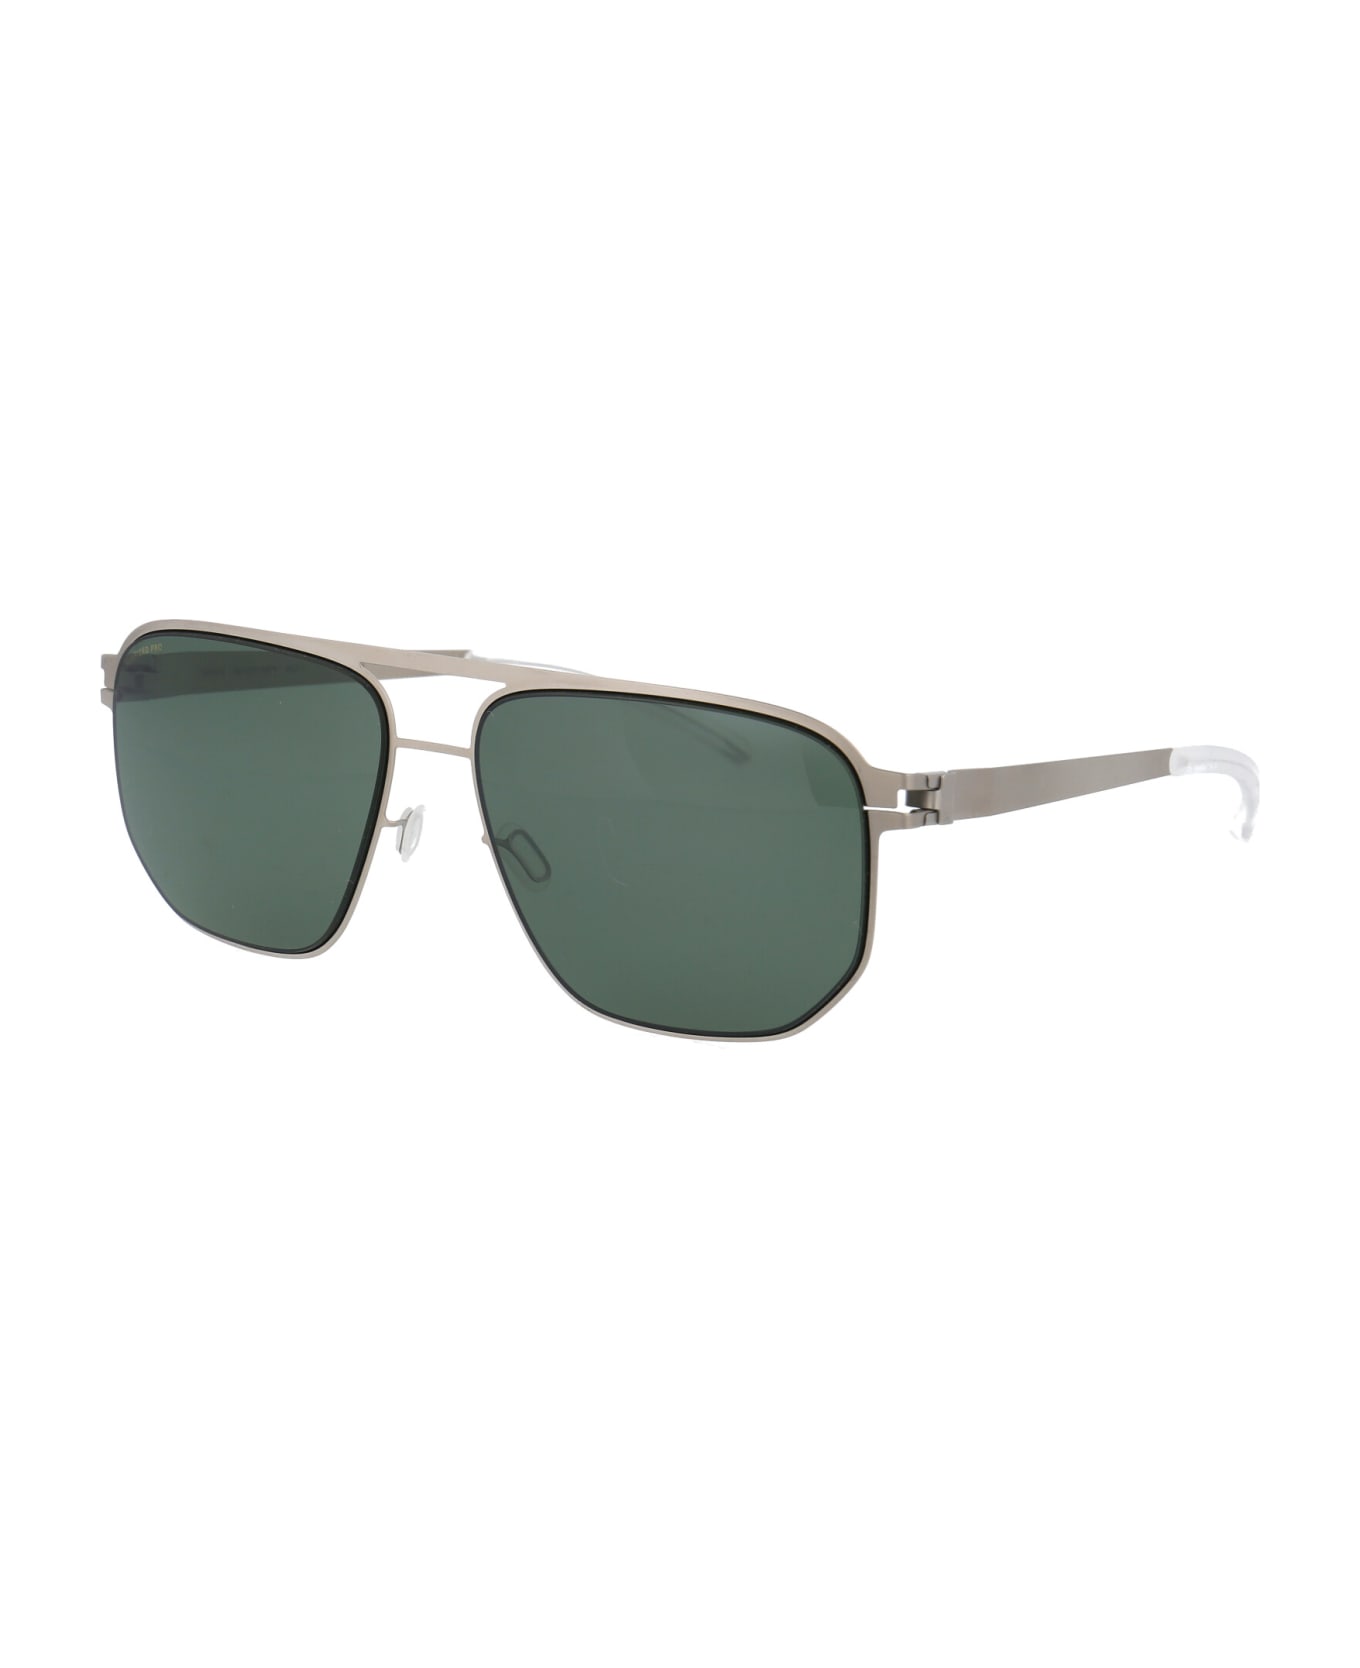 Mykita Perry Sunglasses - 509 Matte Silver/Black Polarized Pro Green